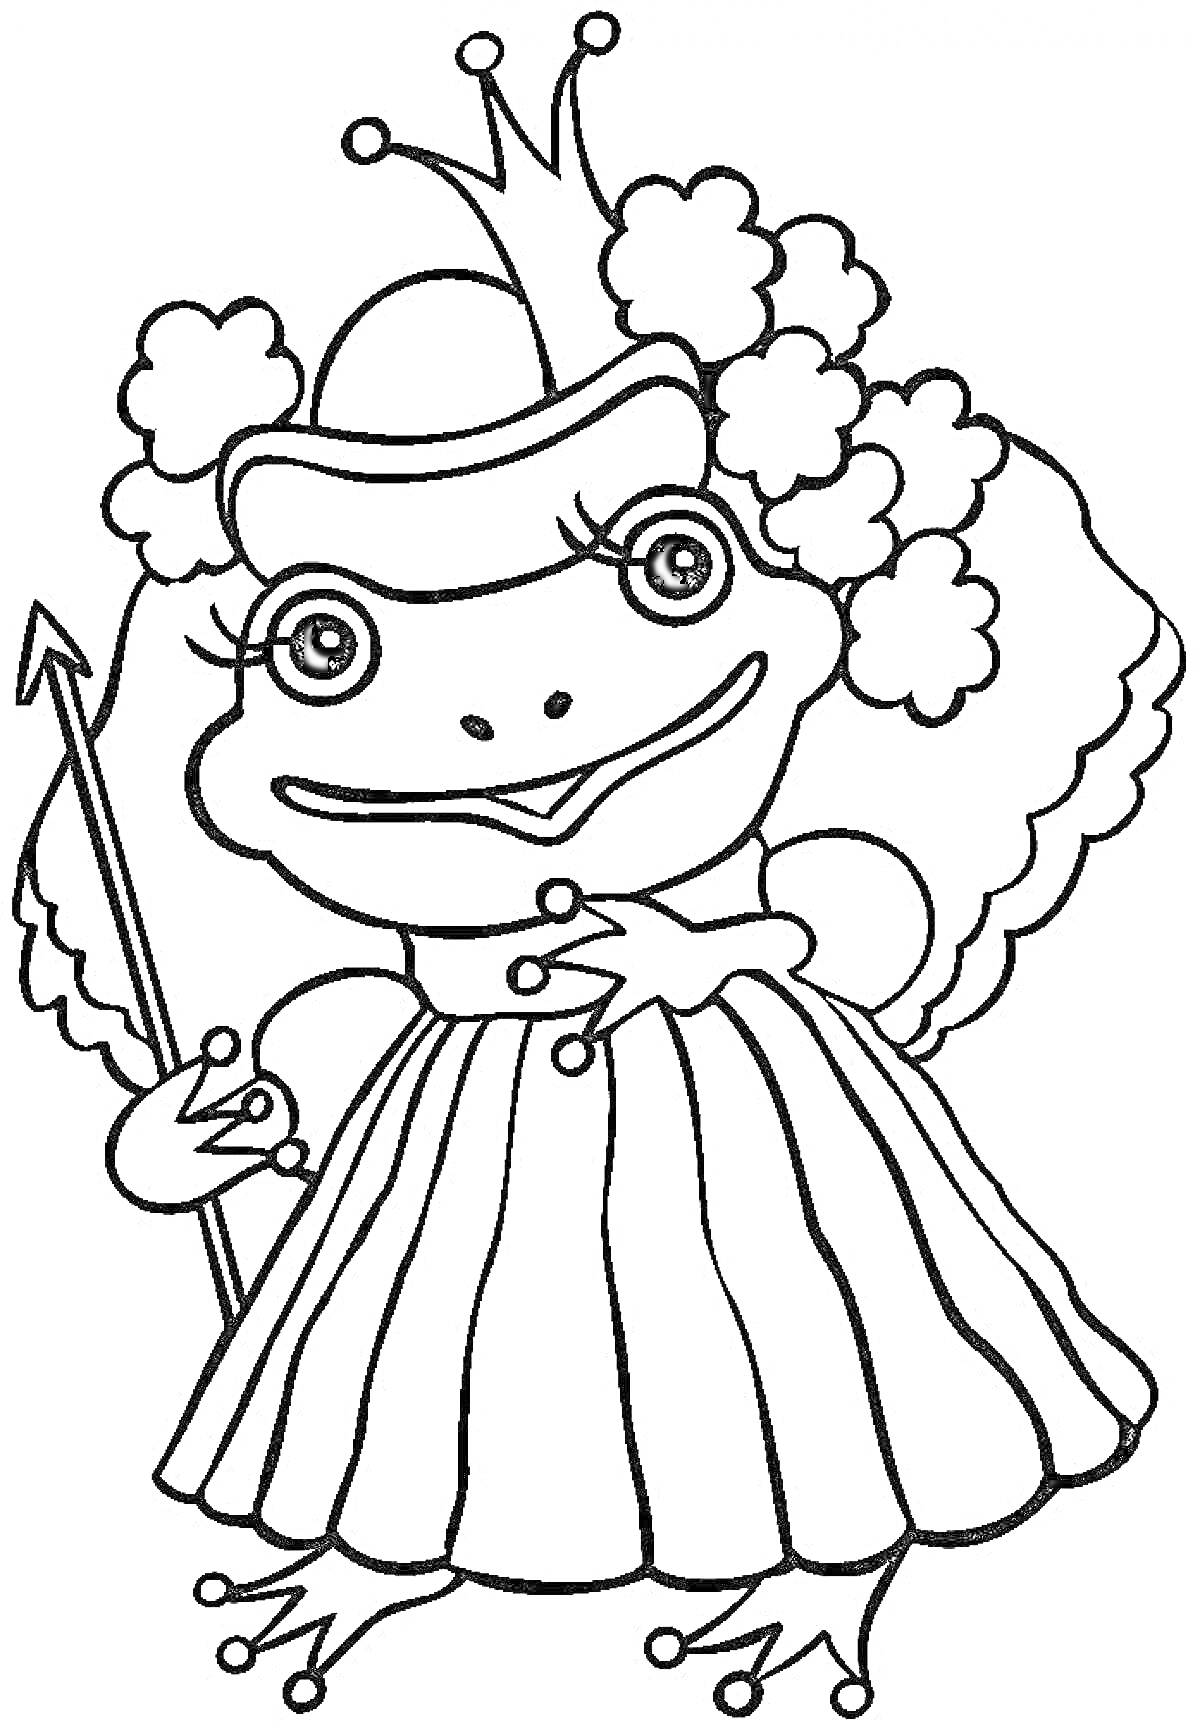 Раскраска Лягушка-принцесса в короне и платье, со скипетром и цветочной короной на голове